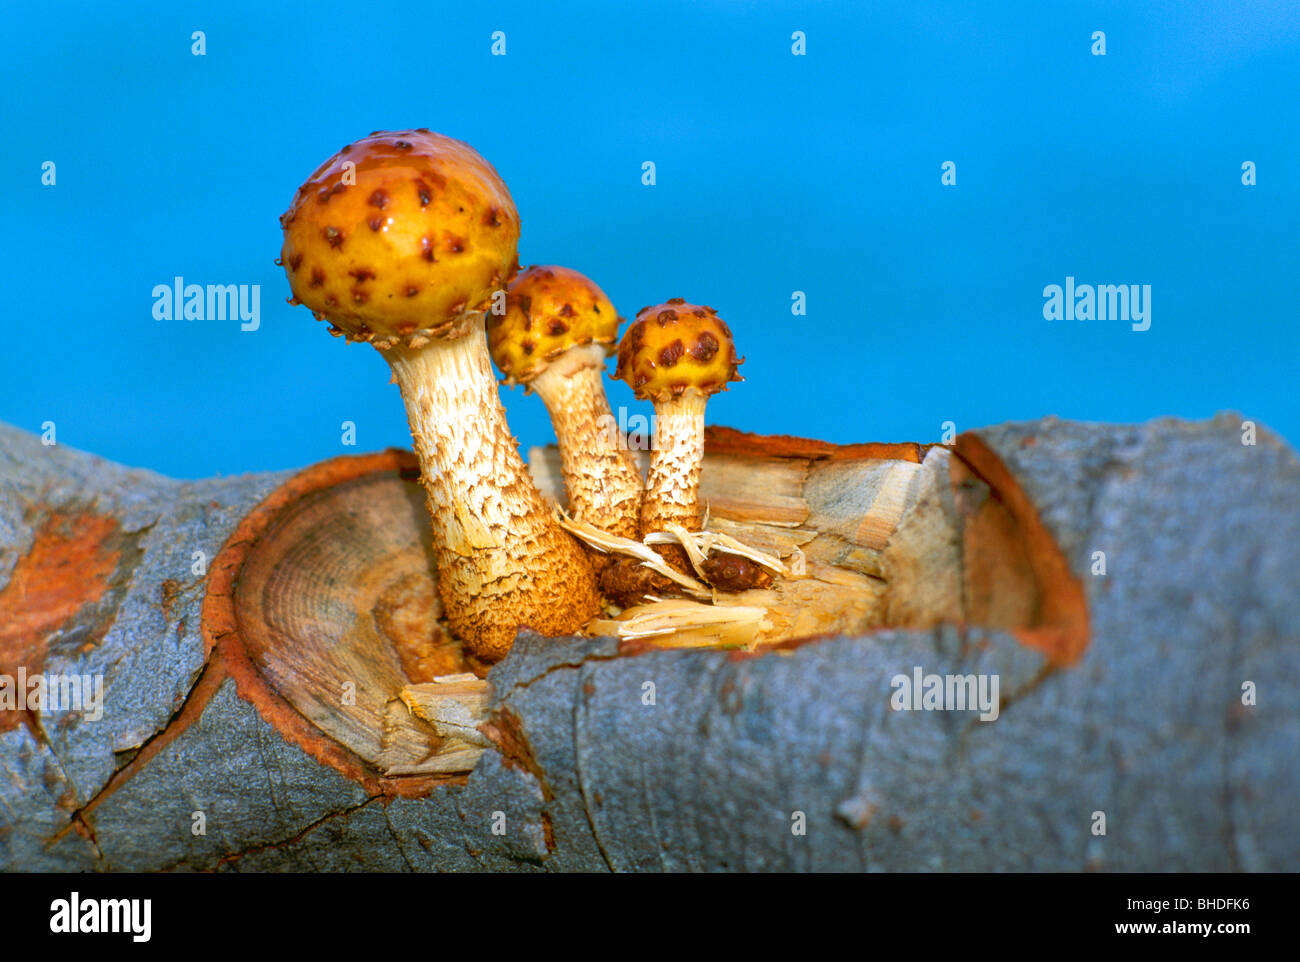 Mushroom / Mushrooms - Fat Pholiota (Pholiota adiposa) Fungi / Fungus growing on Log - Edible Wild Toadstool / Toadstools Stock Photo